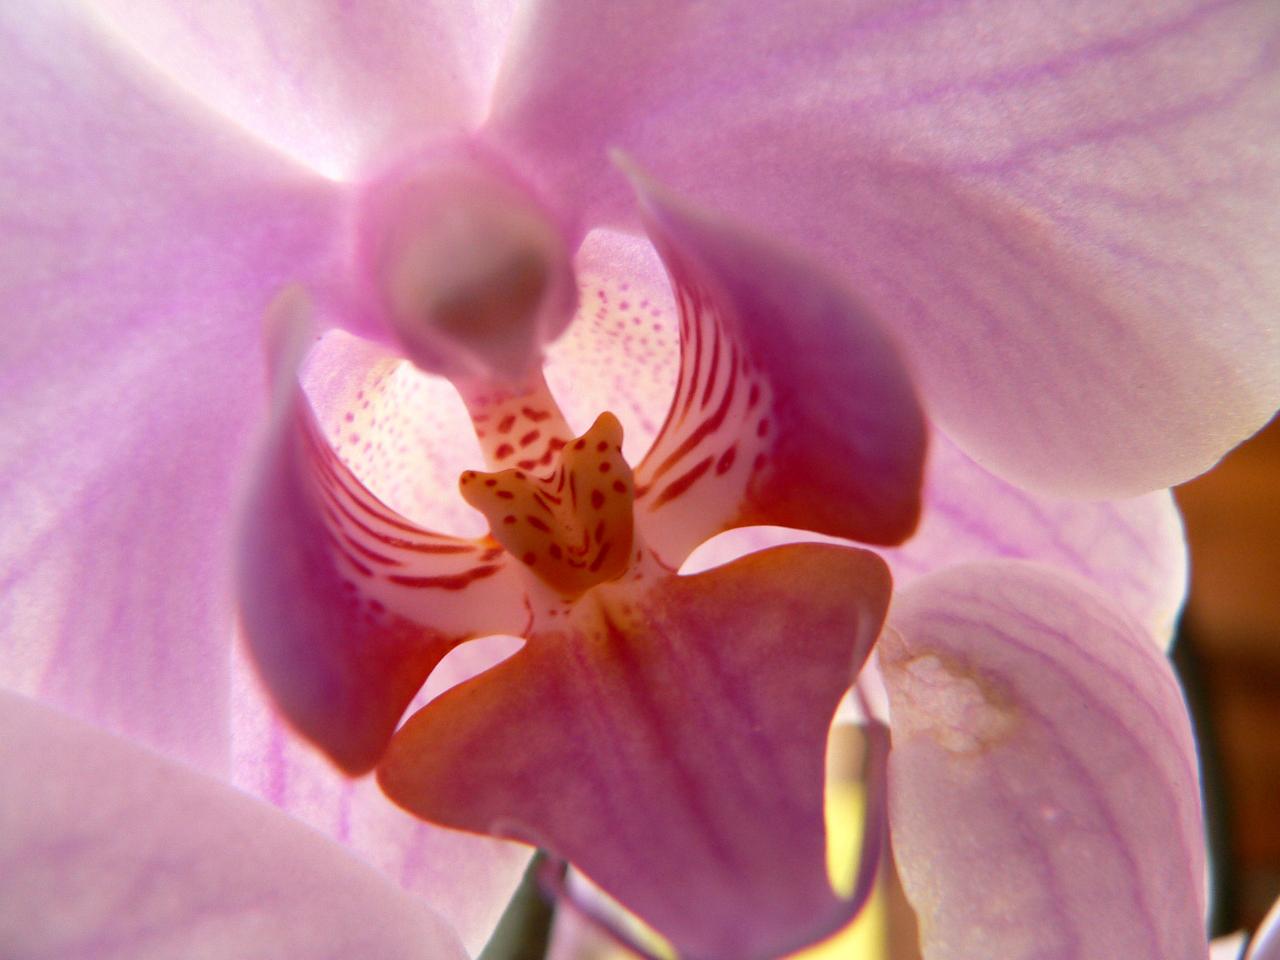 Orchidée menaçante